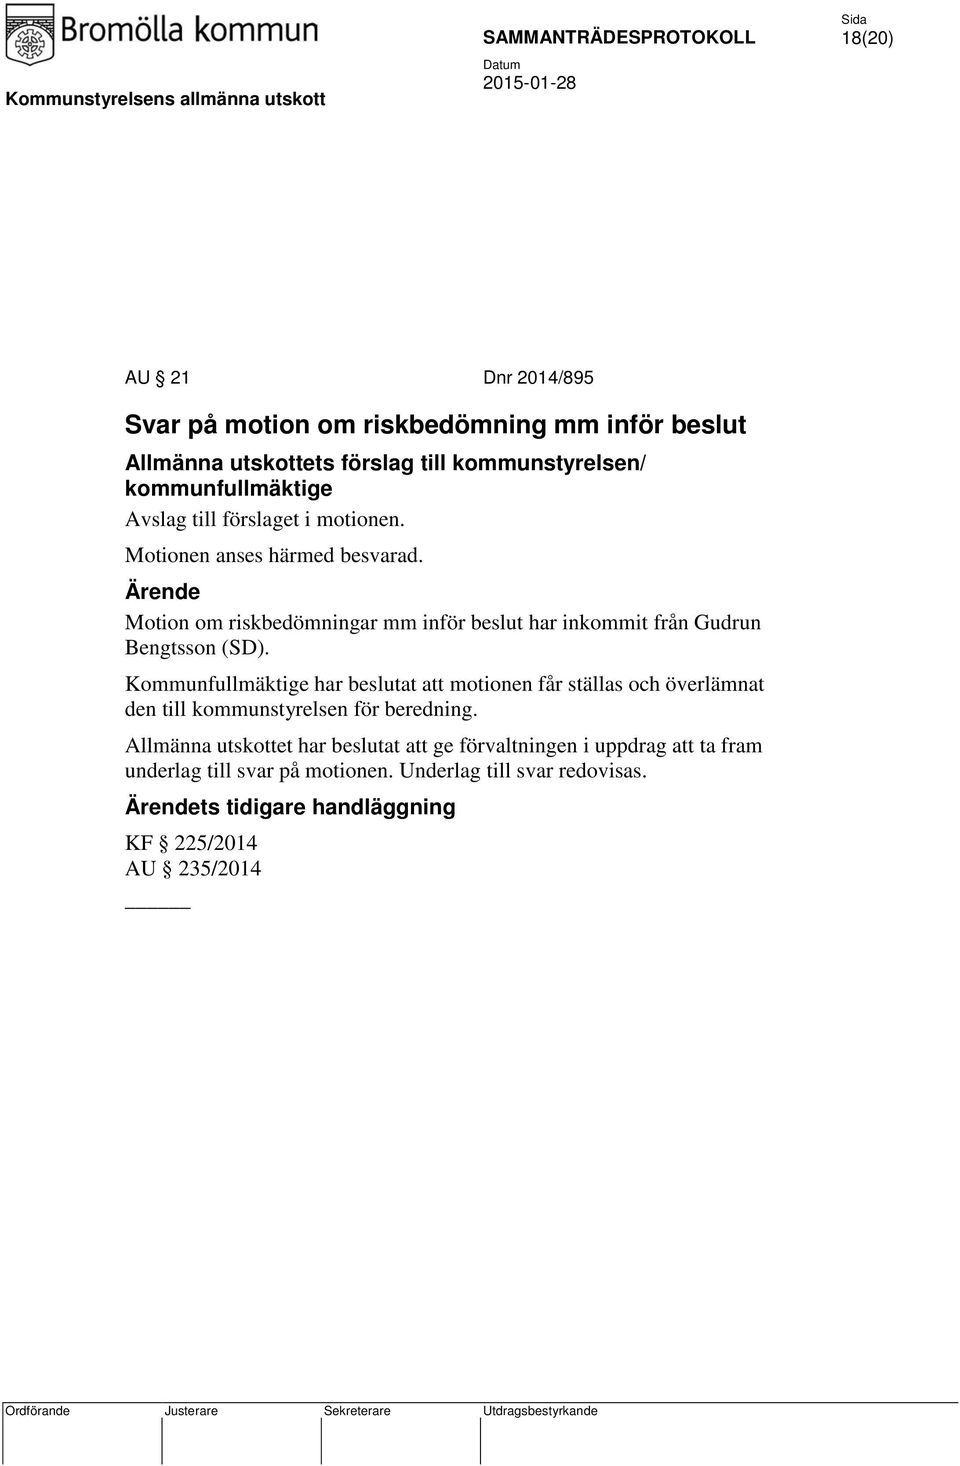 Motion om riskbedömningar mm inför beslut har inkommit från Gudrun Bengtsson (SD).